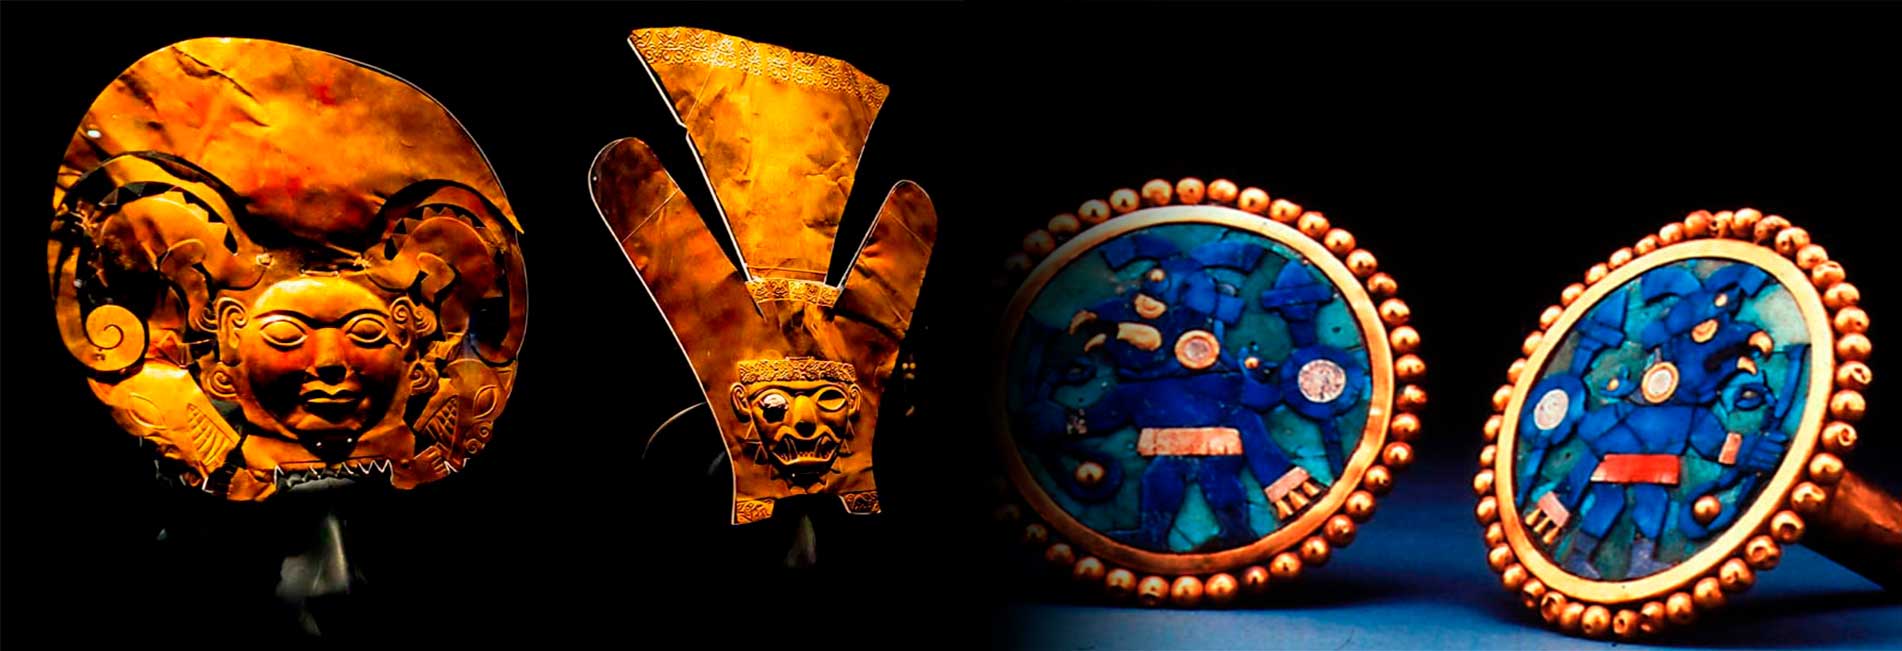 Tour por el Museo Rafael Larco Herrera - 5000 años de historia civilizada